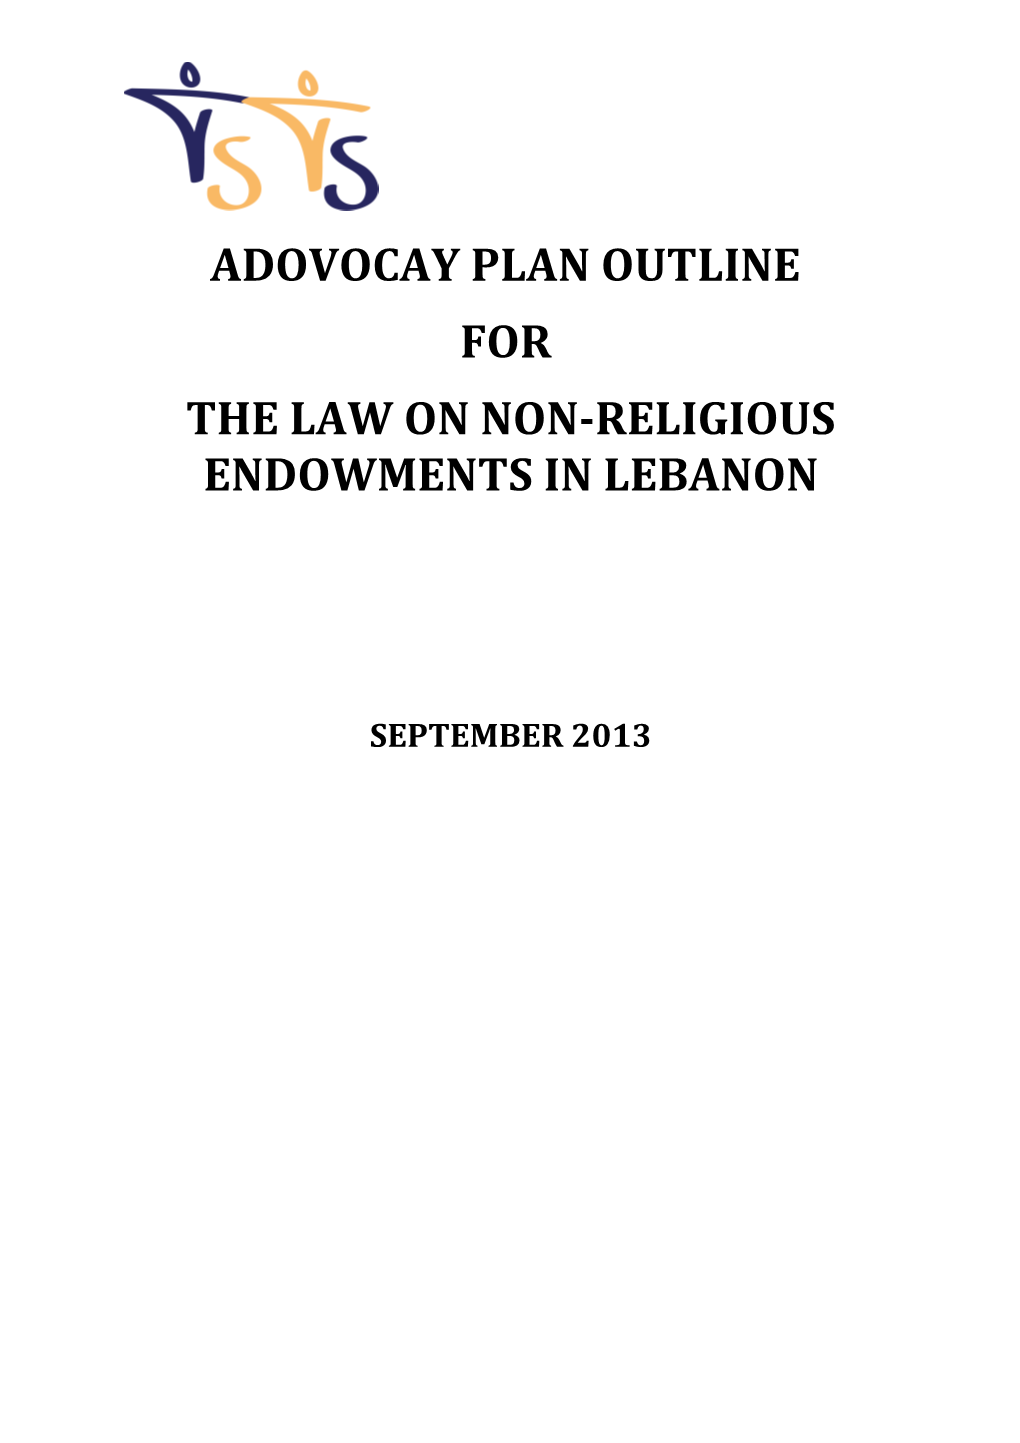 The Law on Non-Religious Endowments in Lebanon